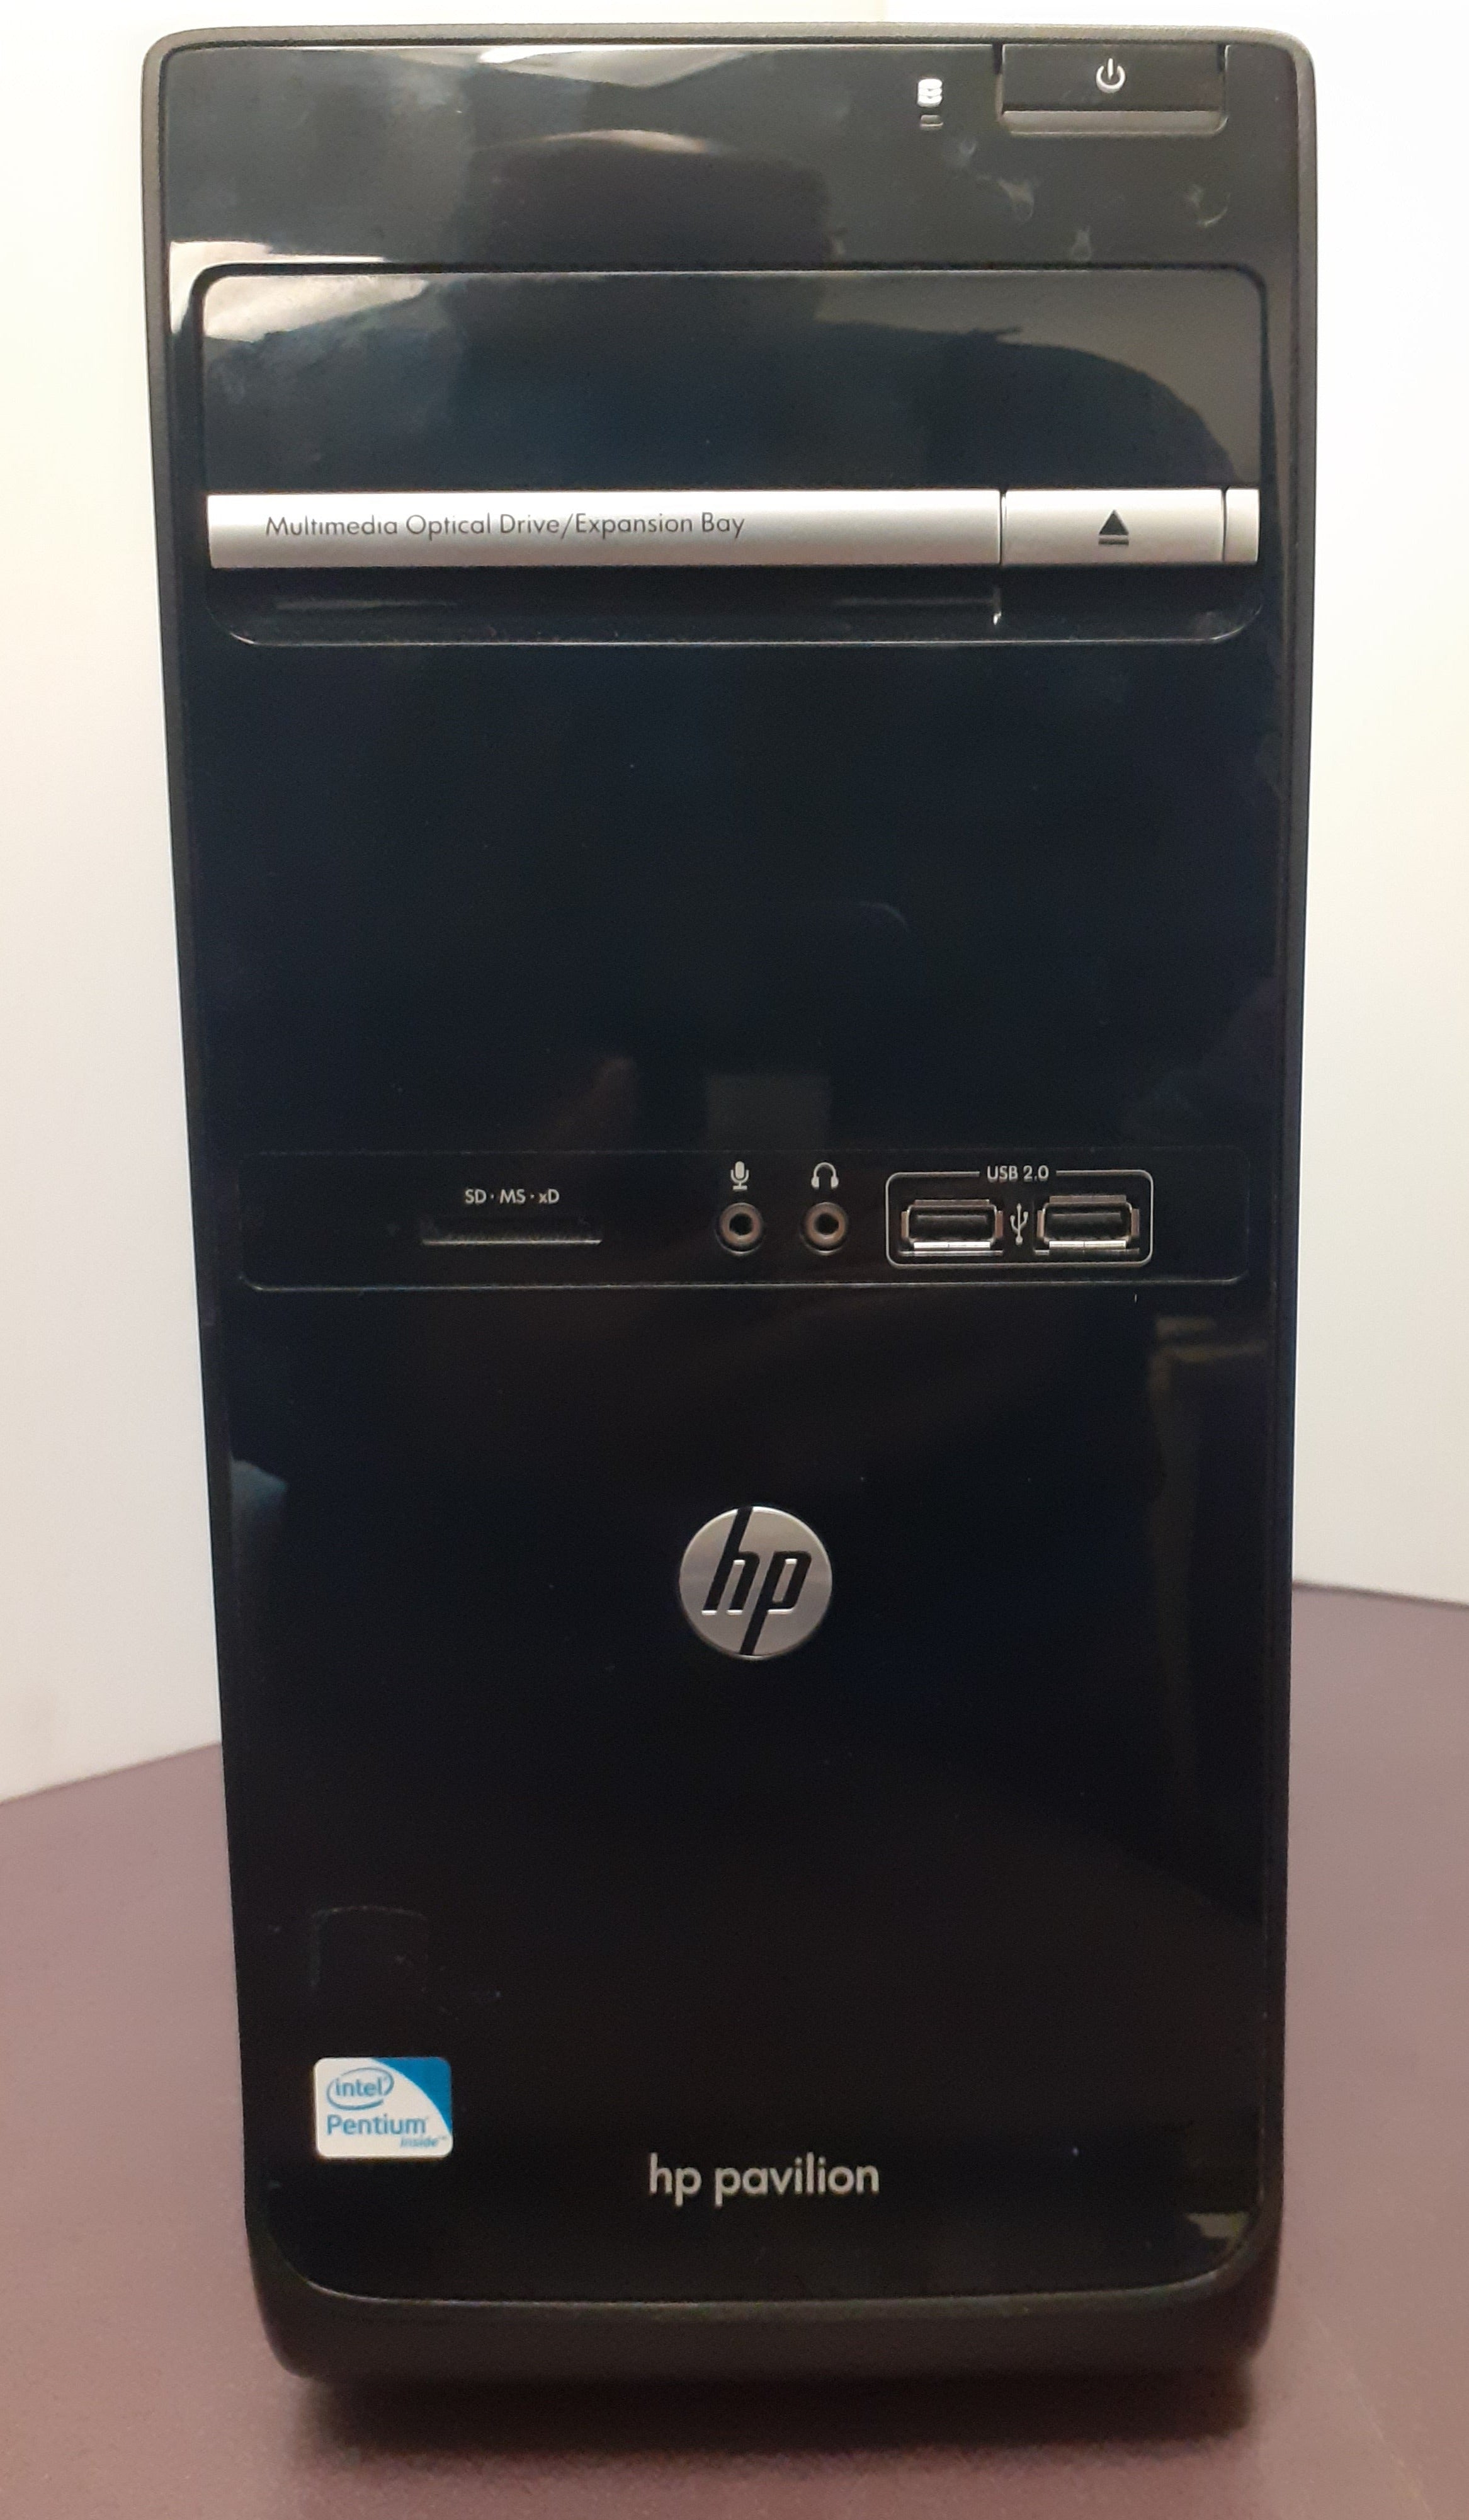 Ordinateur reconditionné - HP Intel Core i3-3220